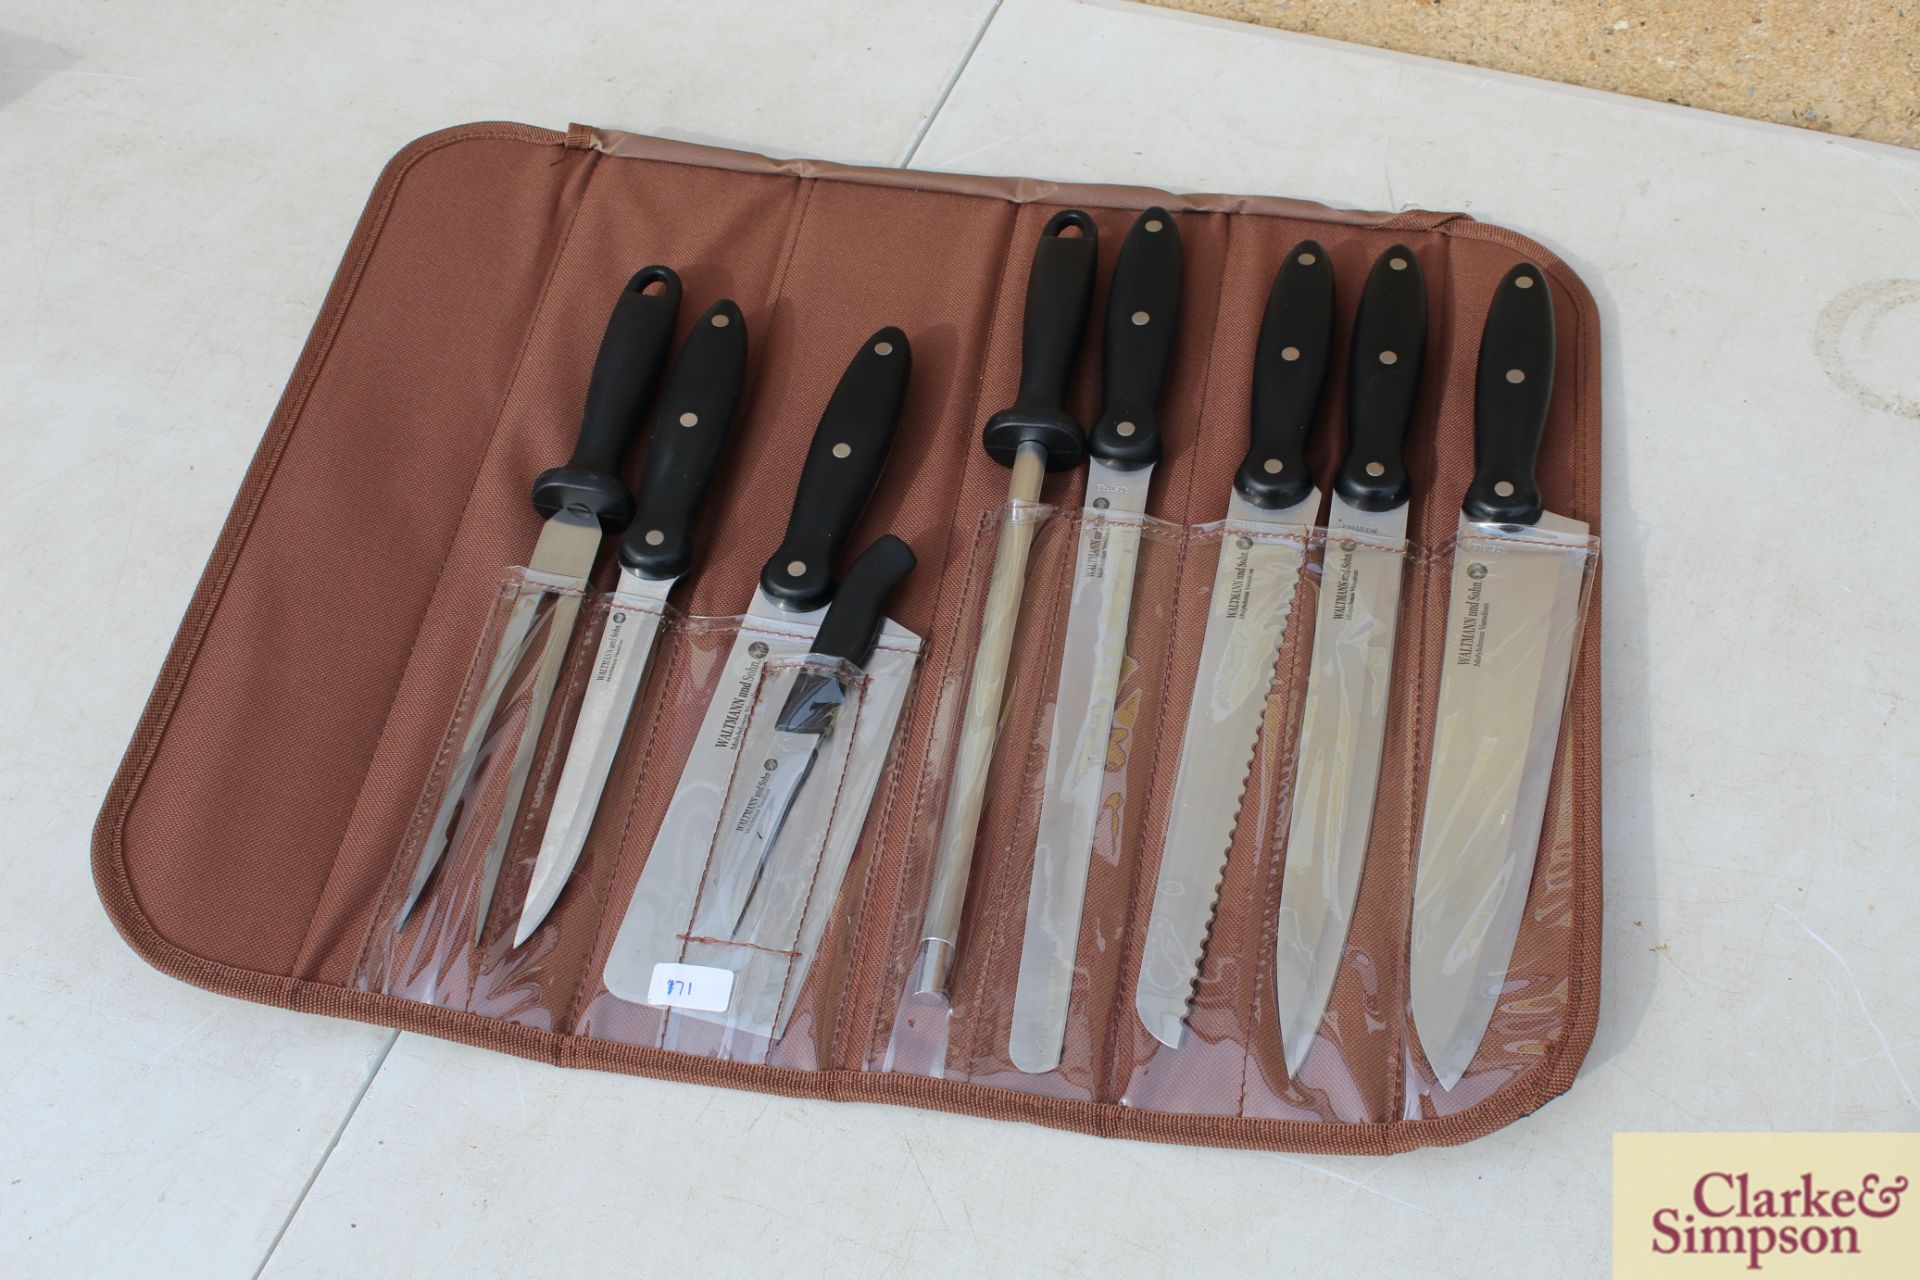 9 piece knife set in bag. *